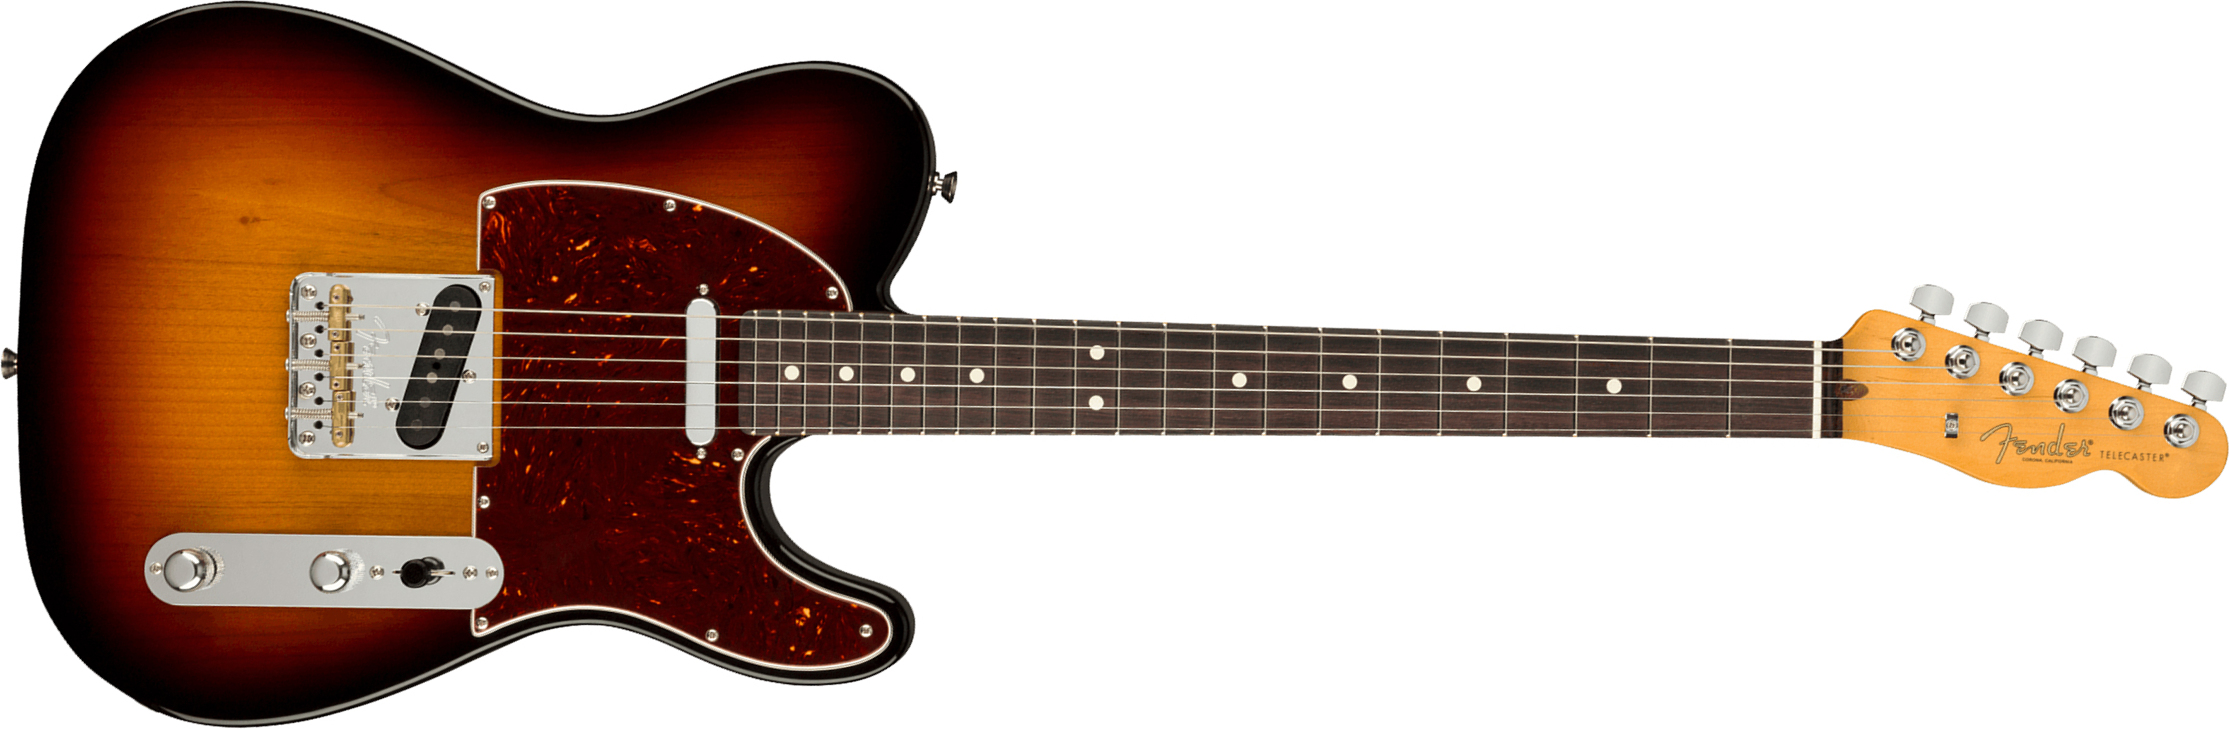 Fender Tele American Professional Ii Usa Rw - 3-color Sunburst - E-Gitarre in Teleform - Main picture